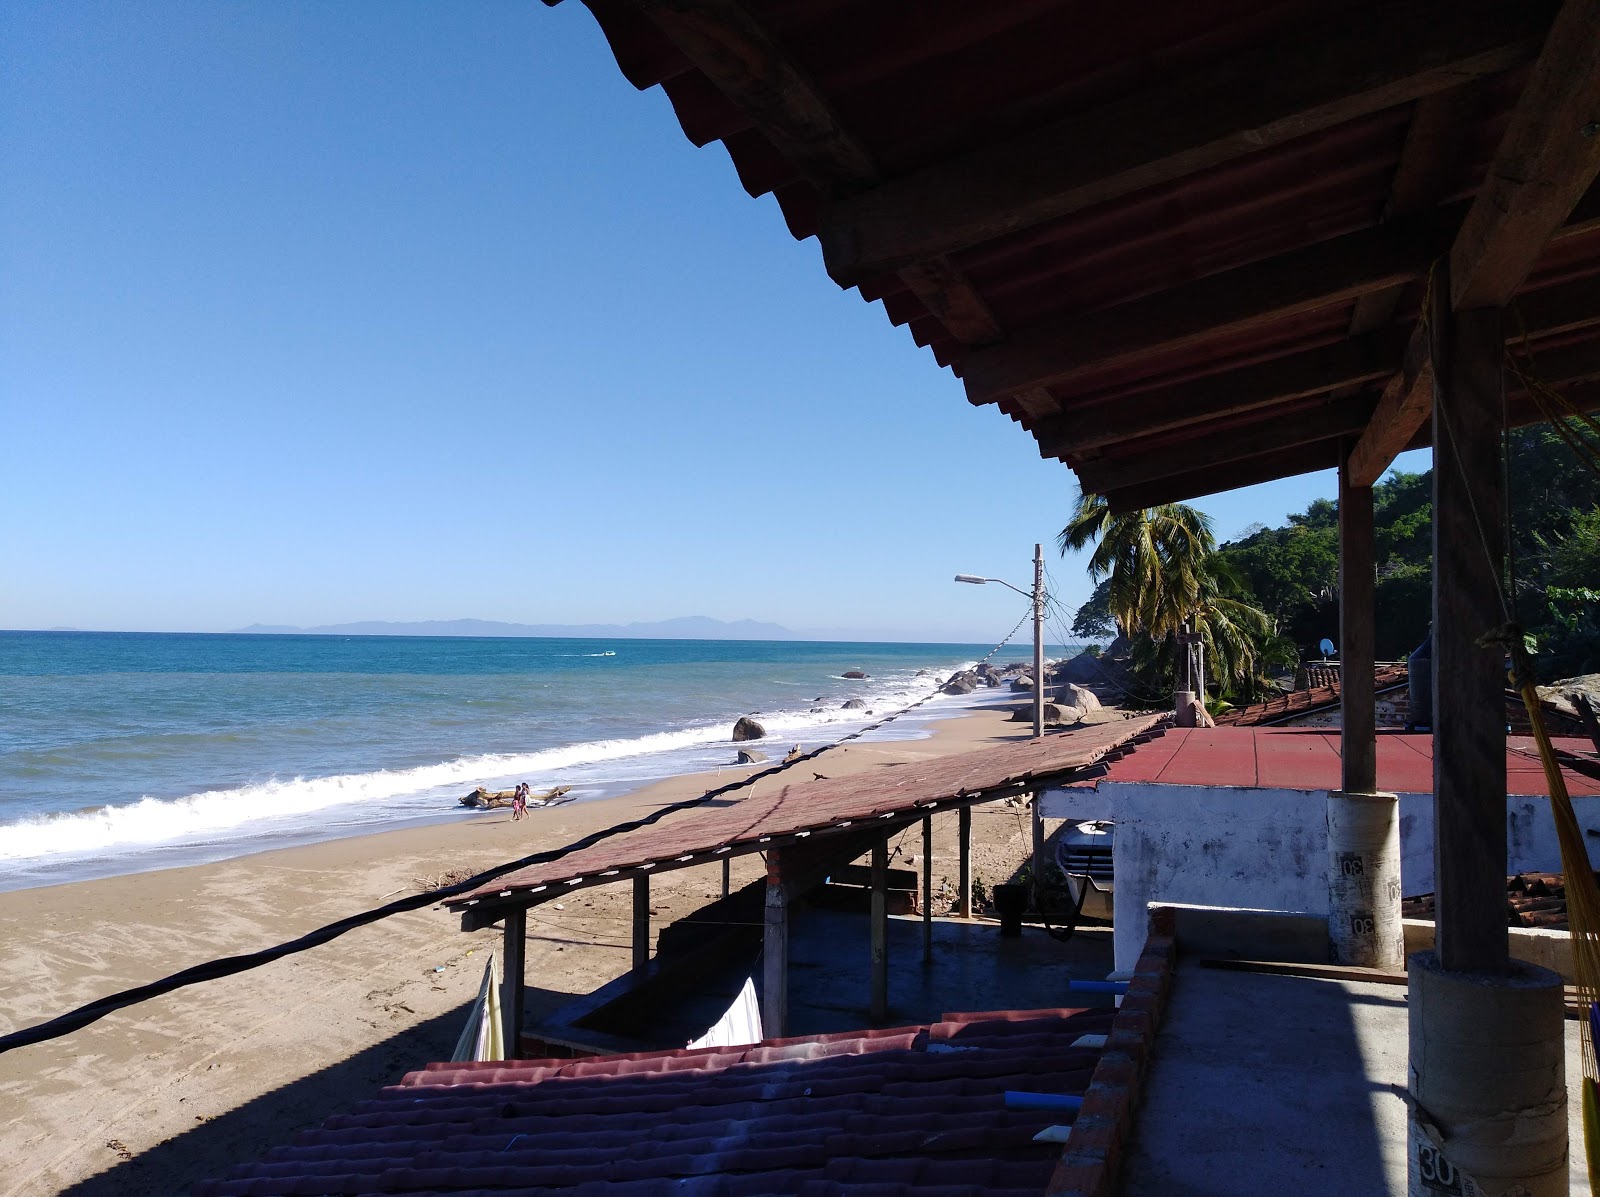 Chimo beach'in fotoğrafı geniş plaj ile birlikte